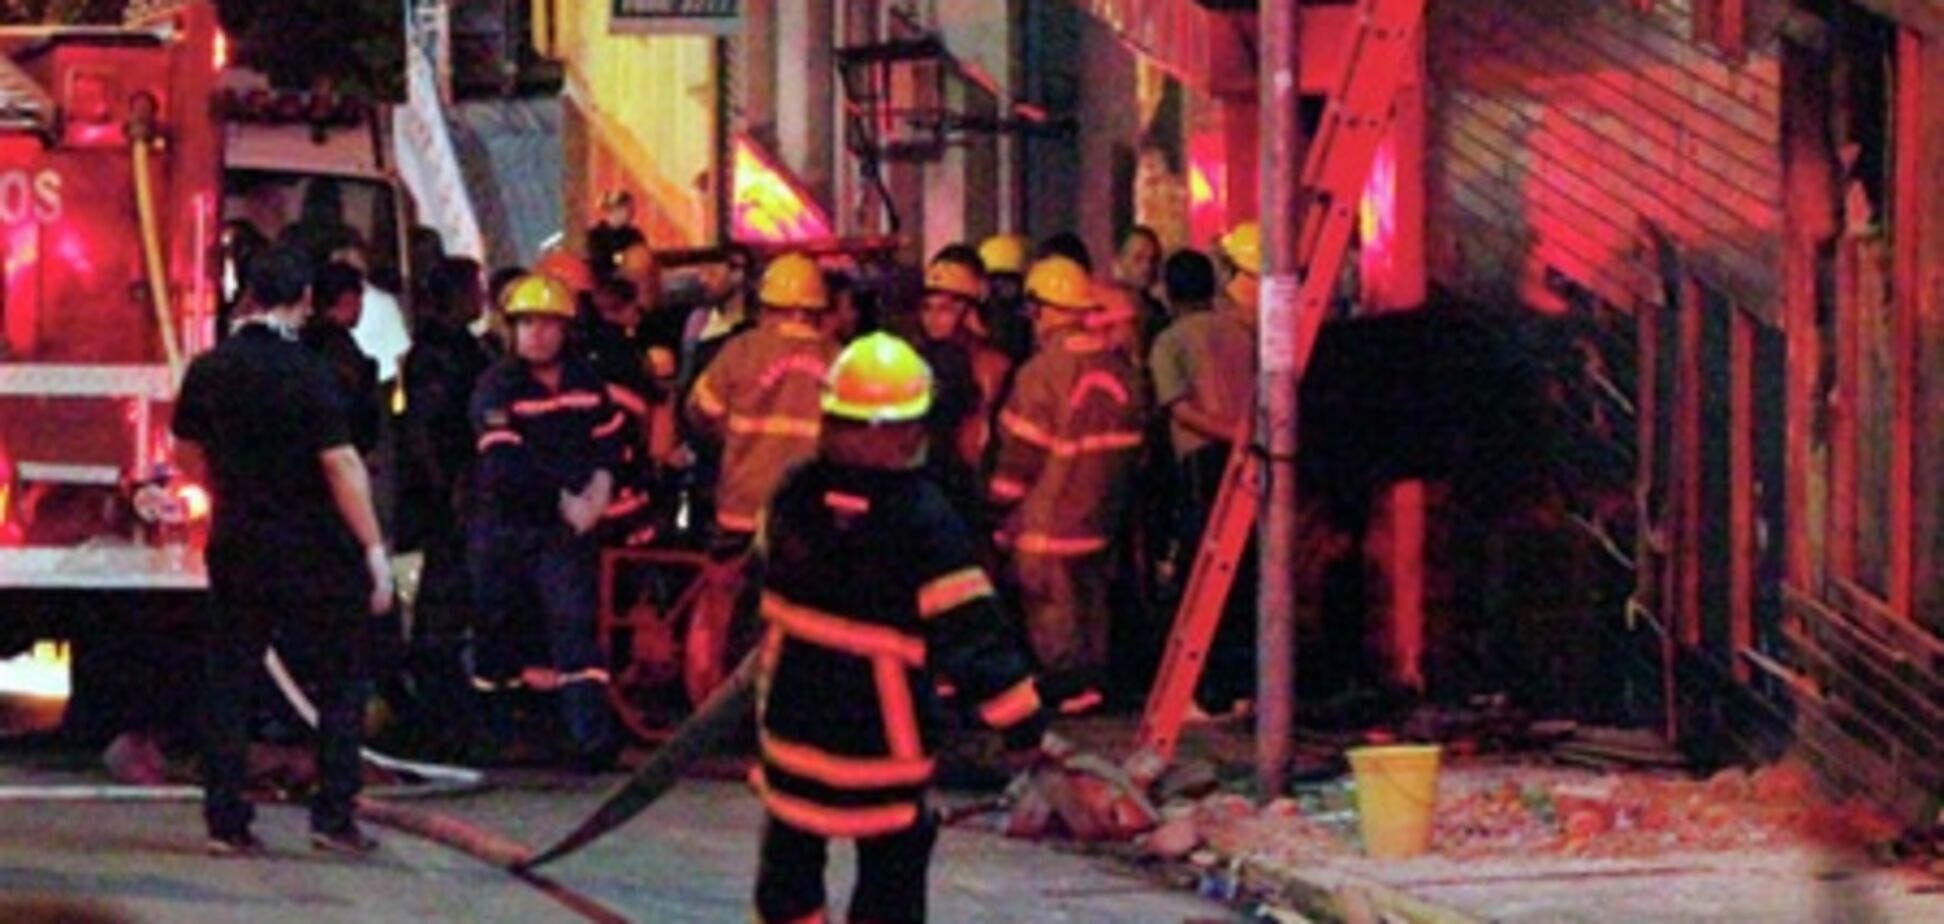 Звинувачення у справі про пожежу в бразильському нічному клубі пред'явили його співробітникам